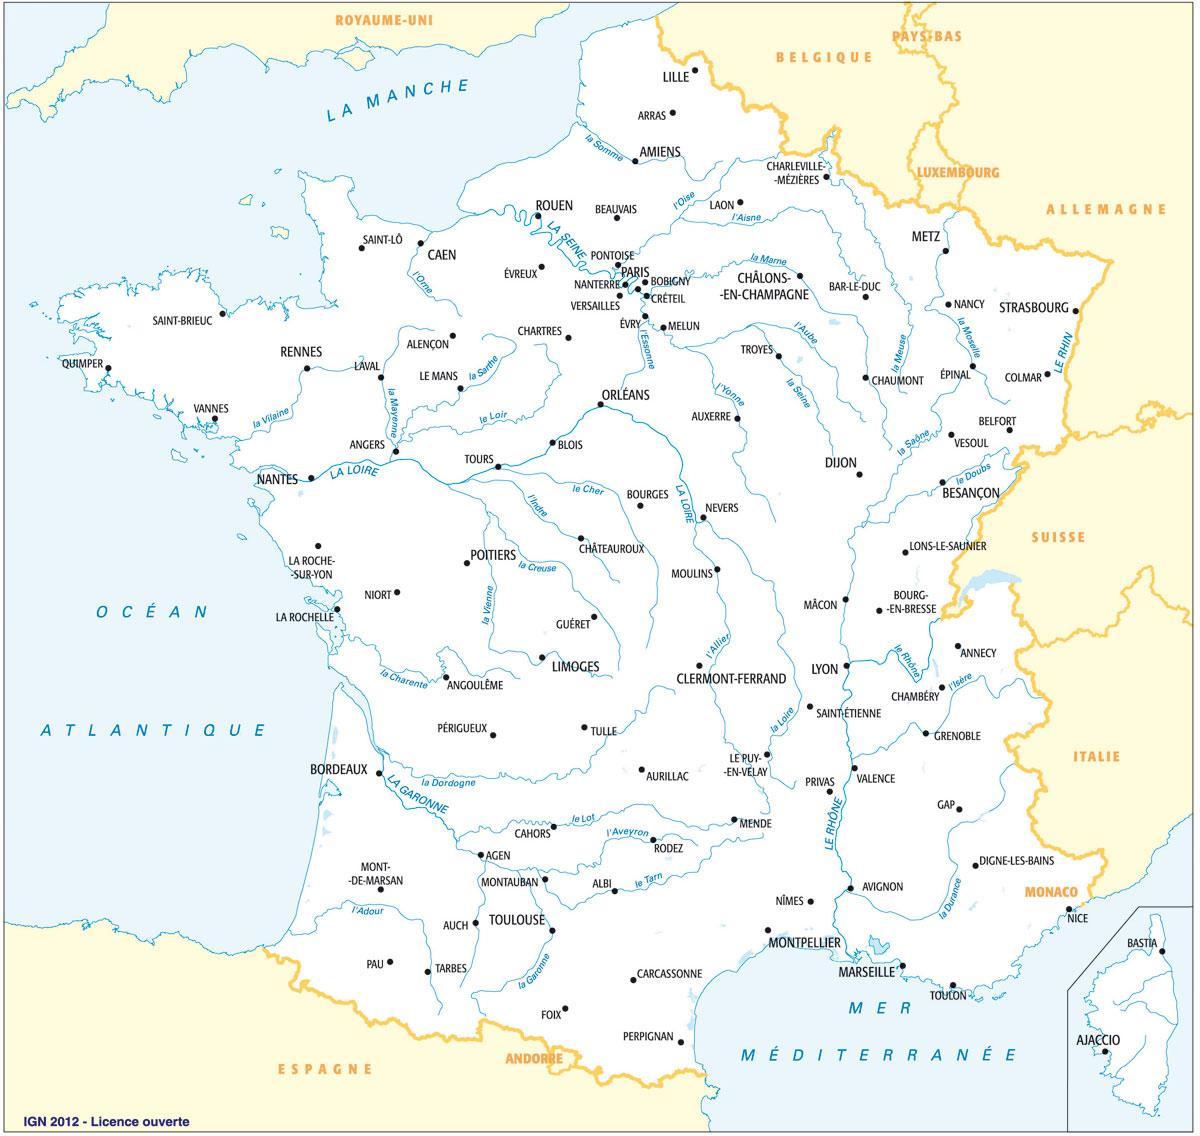 Реки во Франции карта